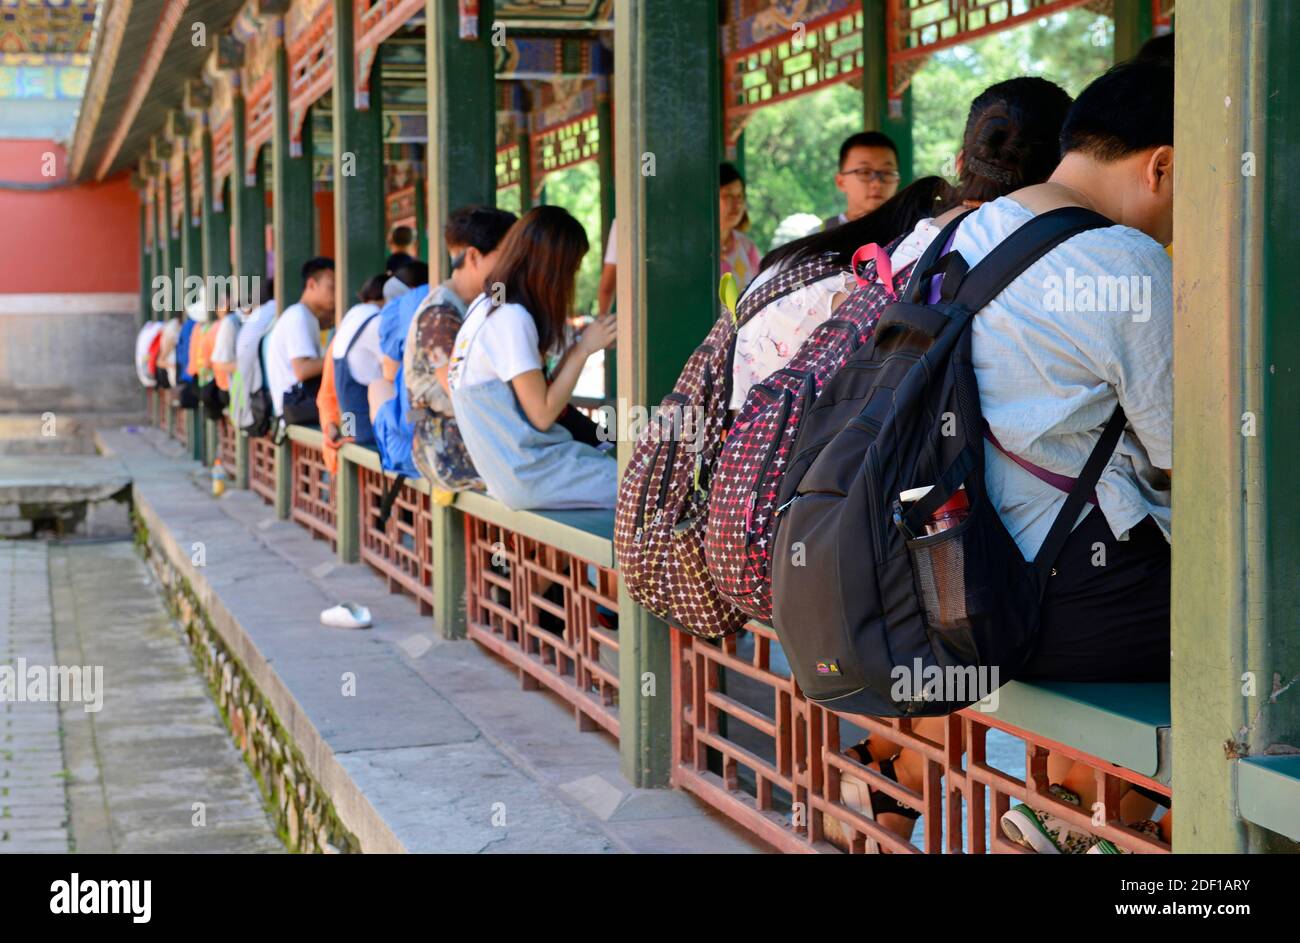 Los visitantes con mochilas se sientan en los asientos de un claustro en el Palacio de Verano en Beijing, China Foto de stock